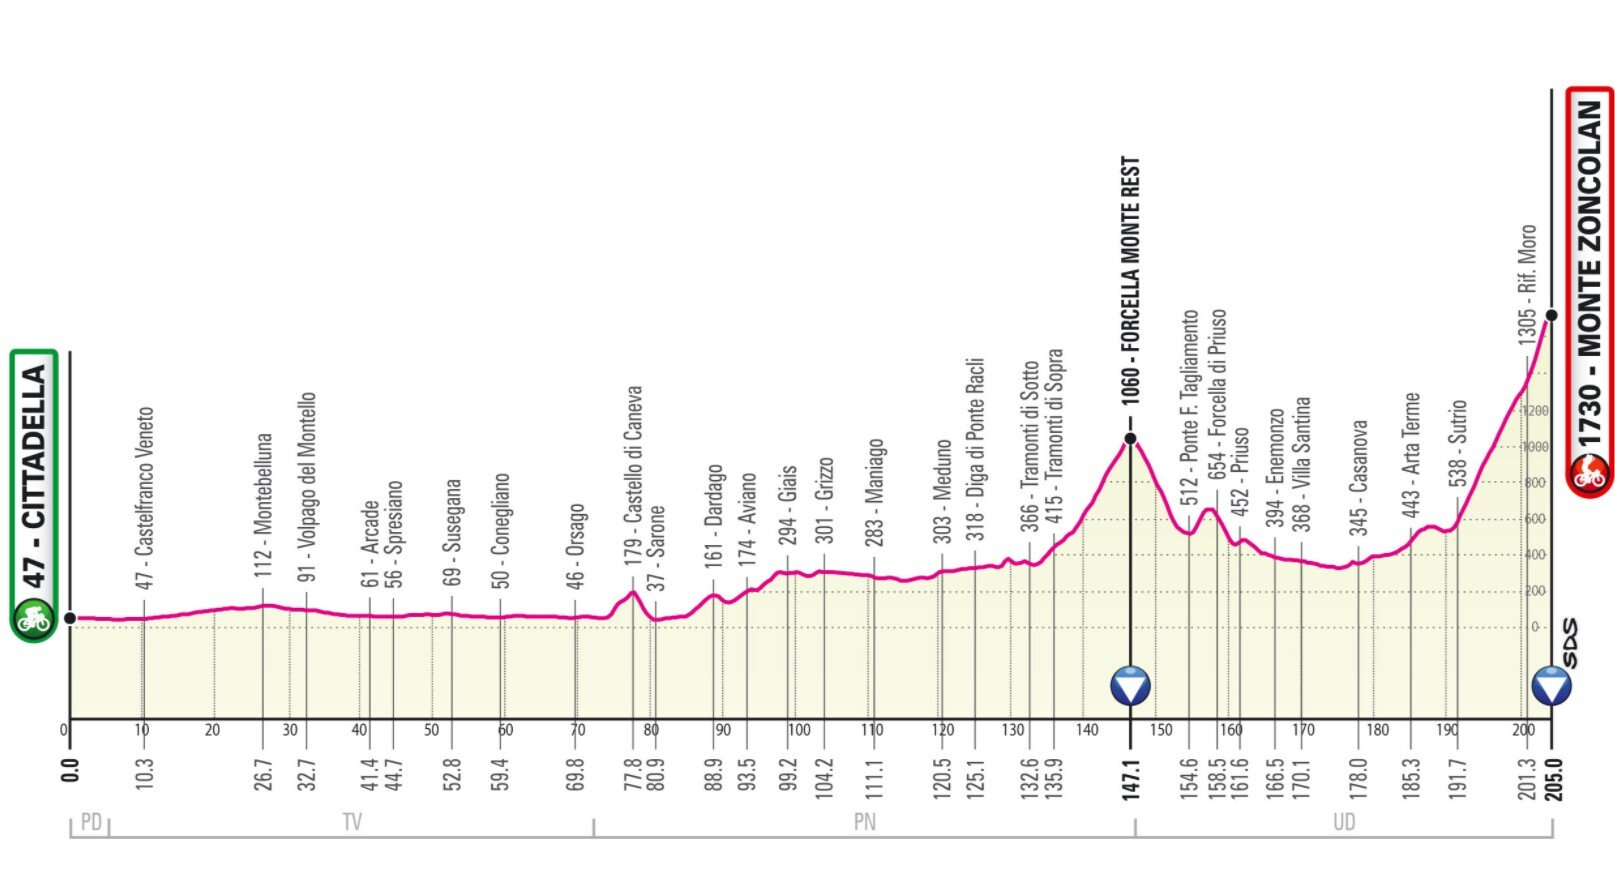 Etapa 14 Giro Italia 2021